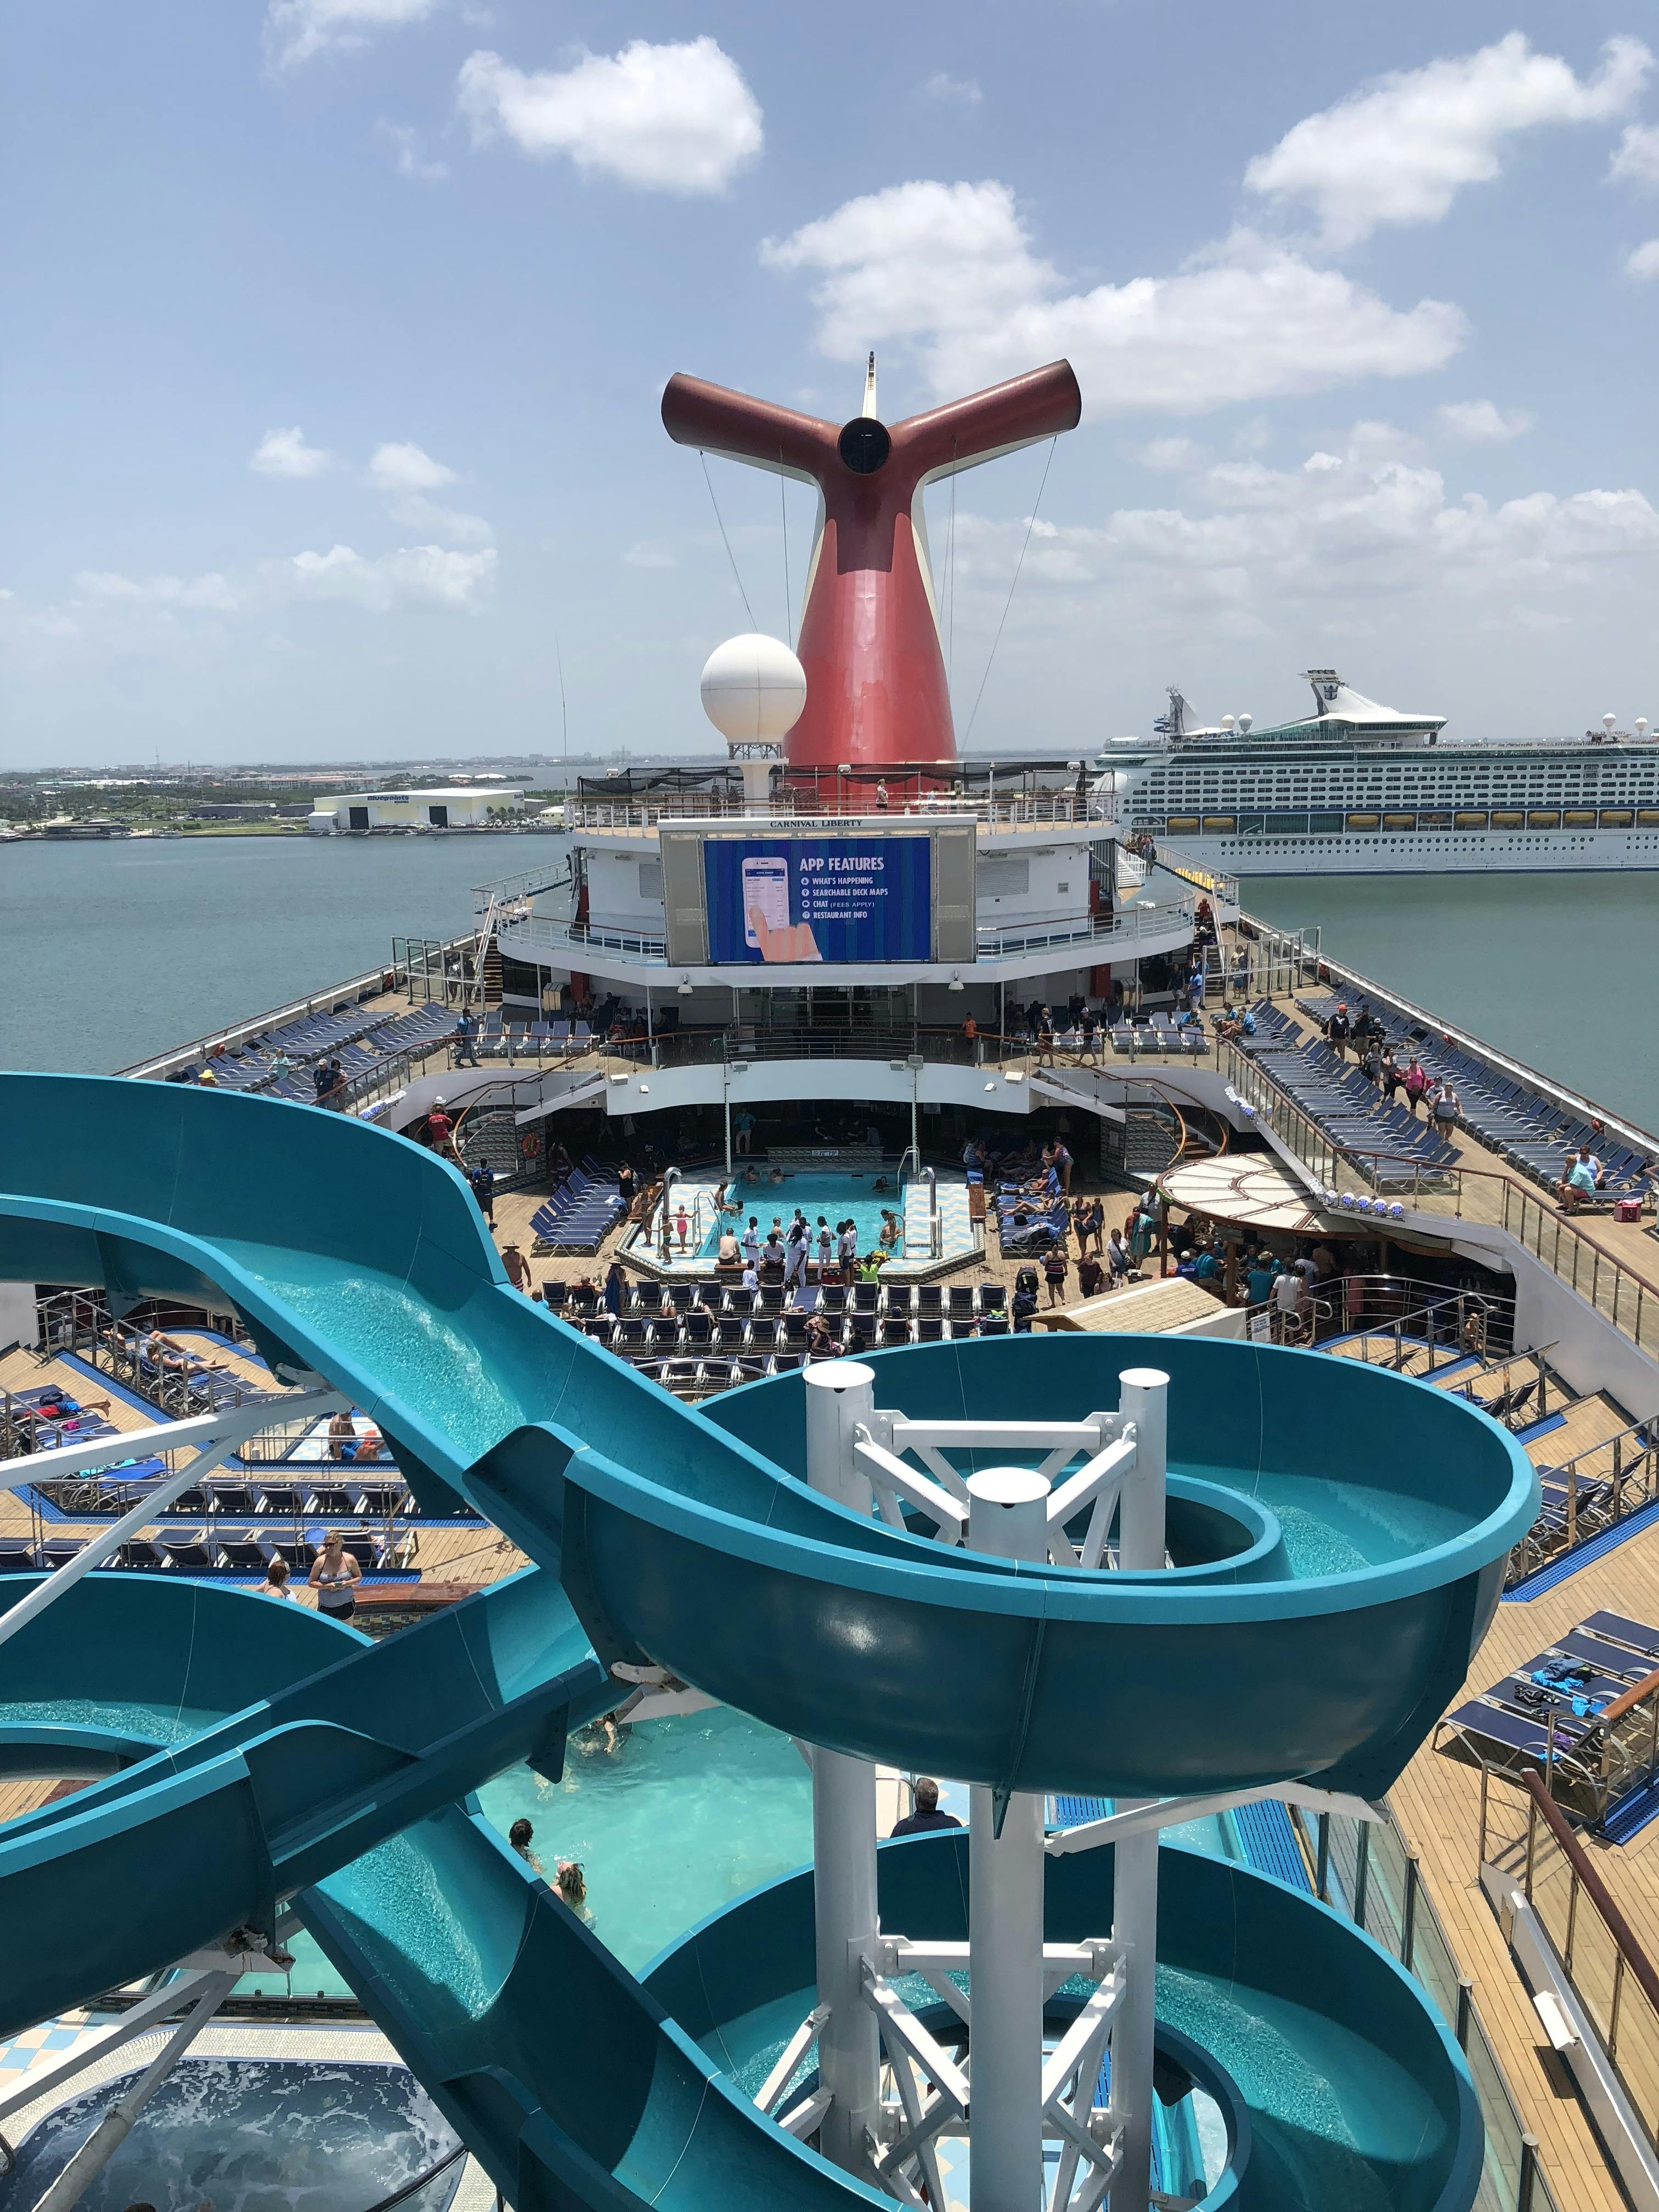 carnival liberty cruise ship reviews